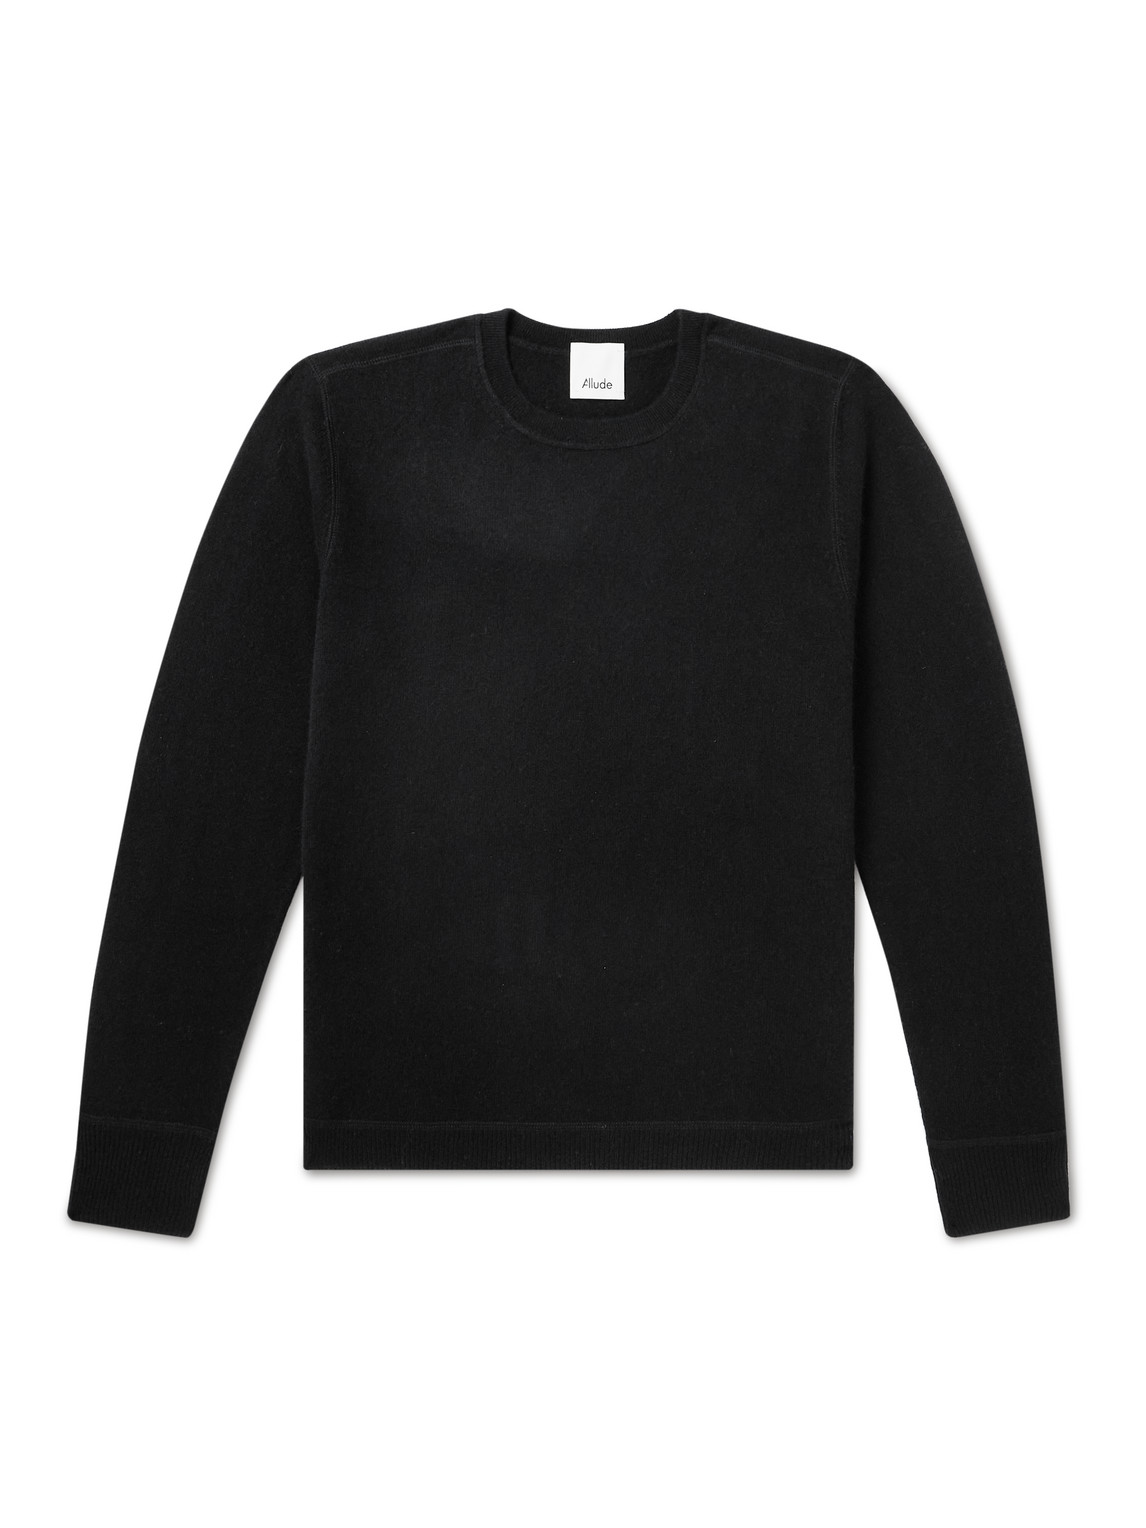 Allude - Cashmere Sweater - Men - Black - S von Allude